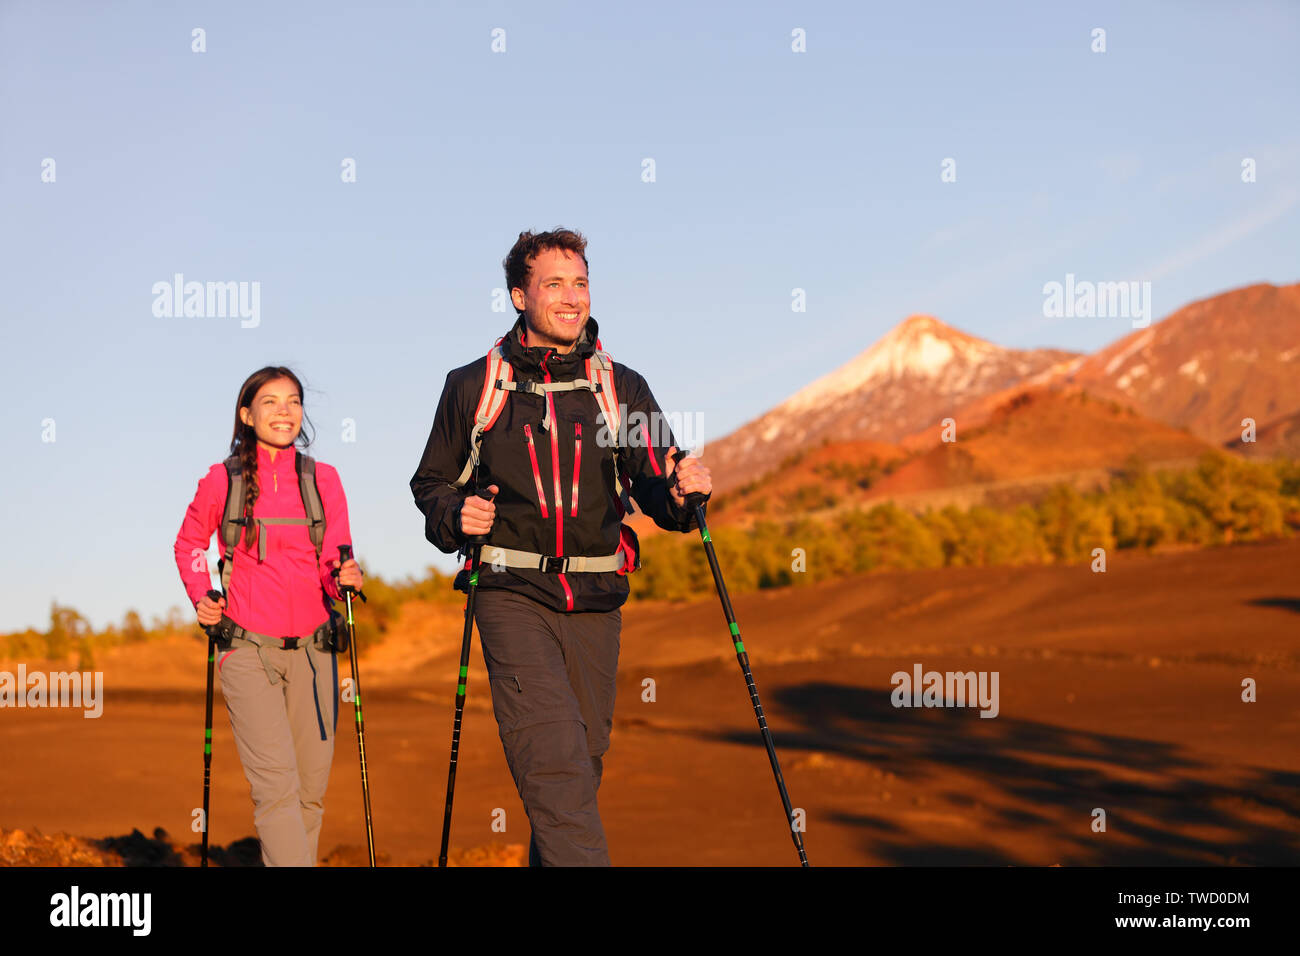 Wanderer Menschen wandern - gesunden, aktiven Lebensstil. Wanderer paar Wandern in wunderschöner Natur Landschaft. Frau und Mann Wanderer wandern während der Wanderung auf den Vulkan Teide, Teneriffa, Kanarische Inseln, Spanien. Stockfoto